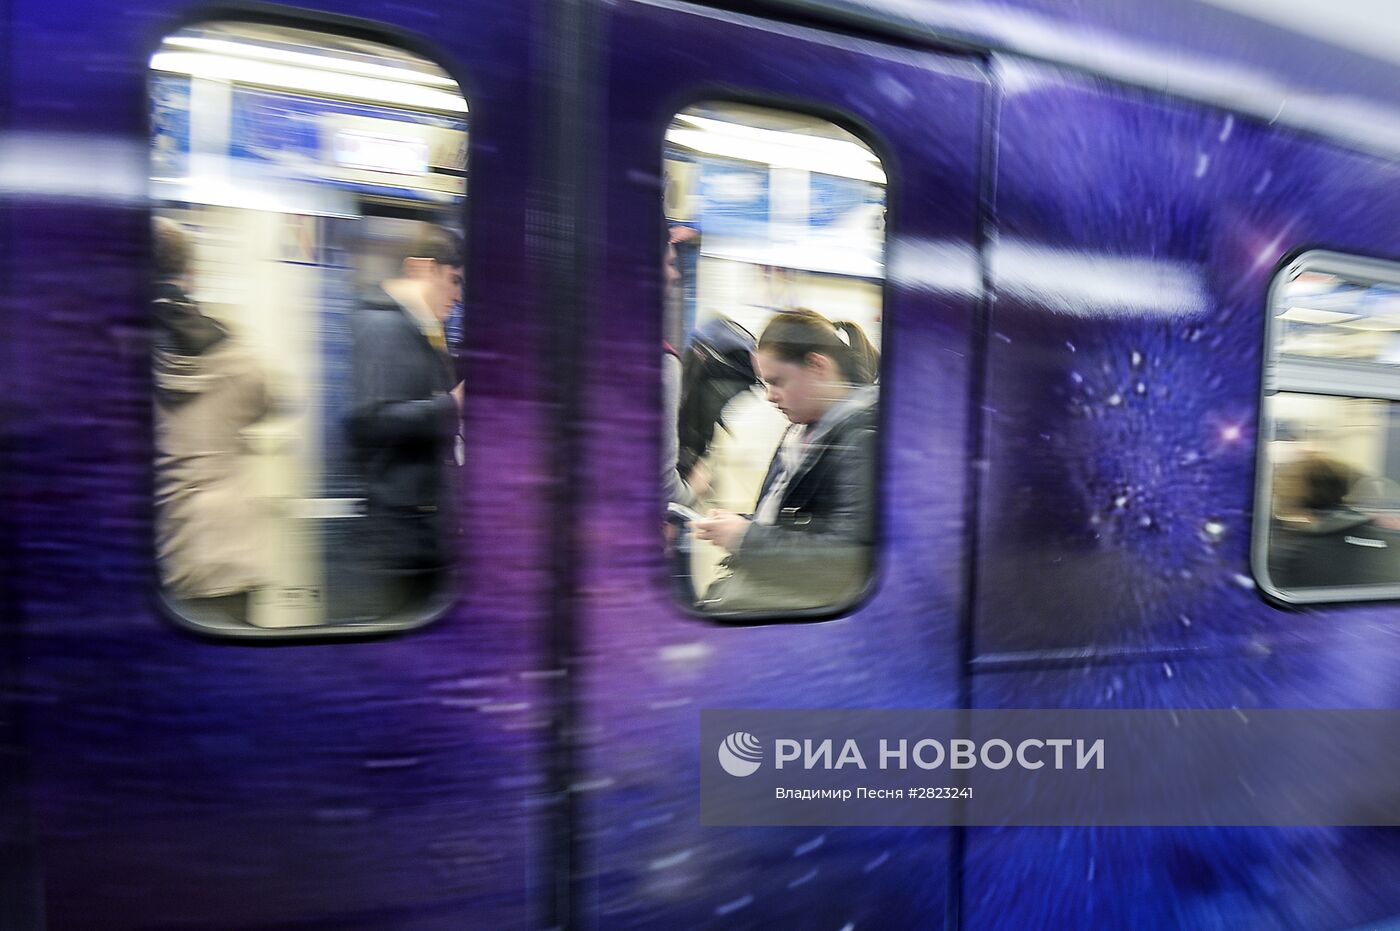 Тематический поезд московского метро, посвященный 55-летию первого полета человека в космос